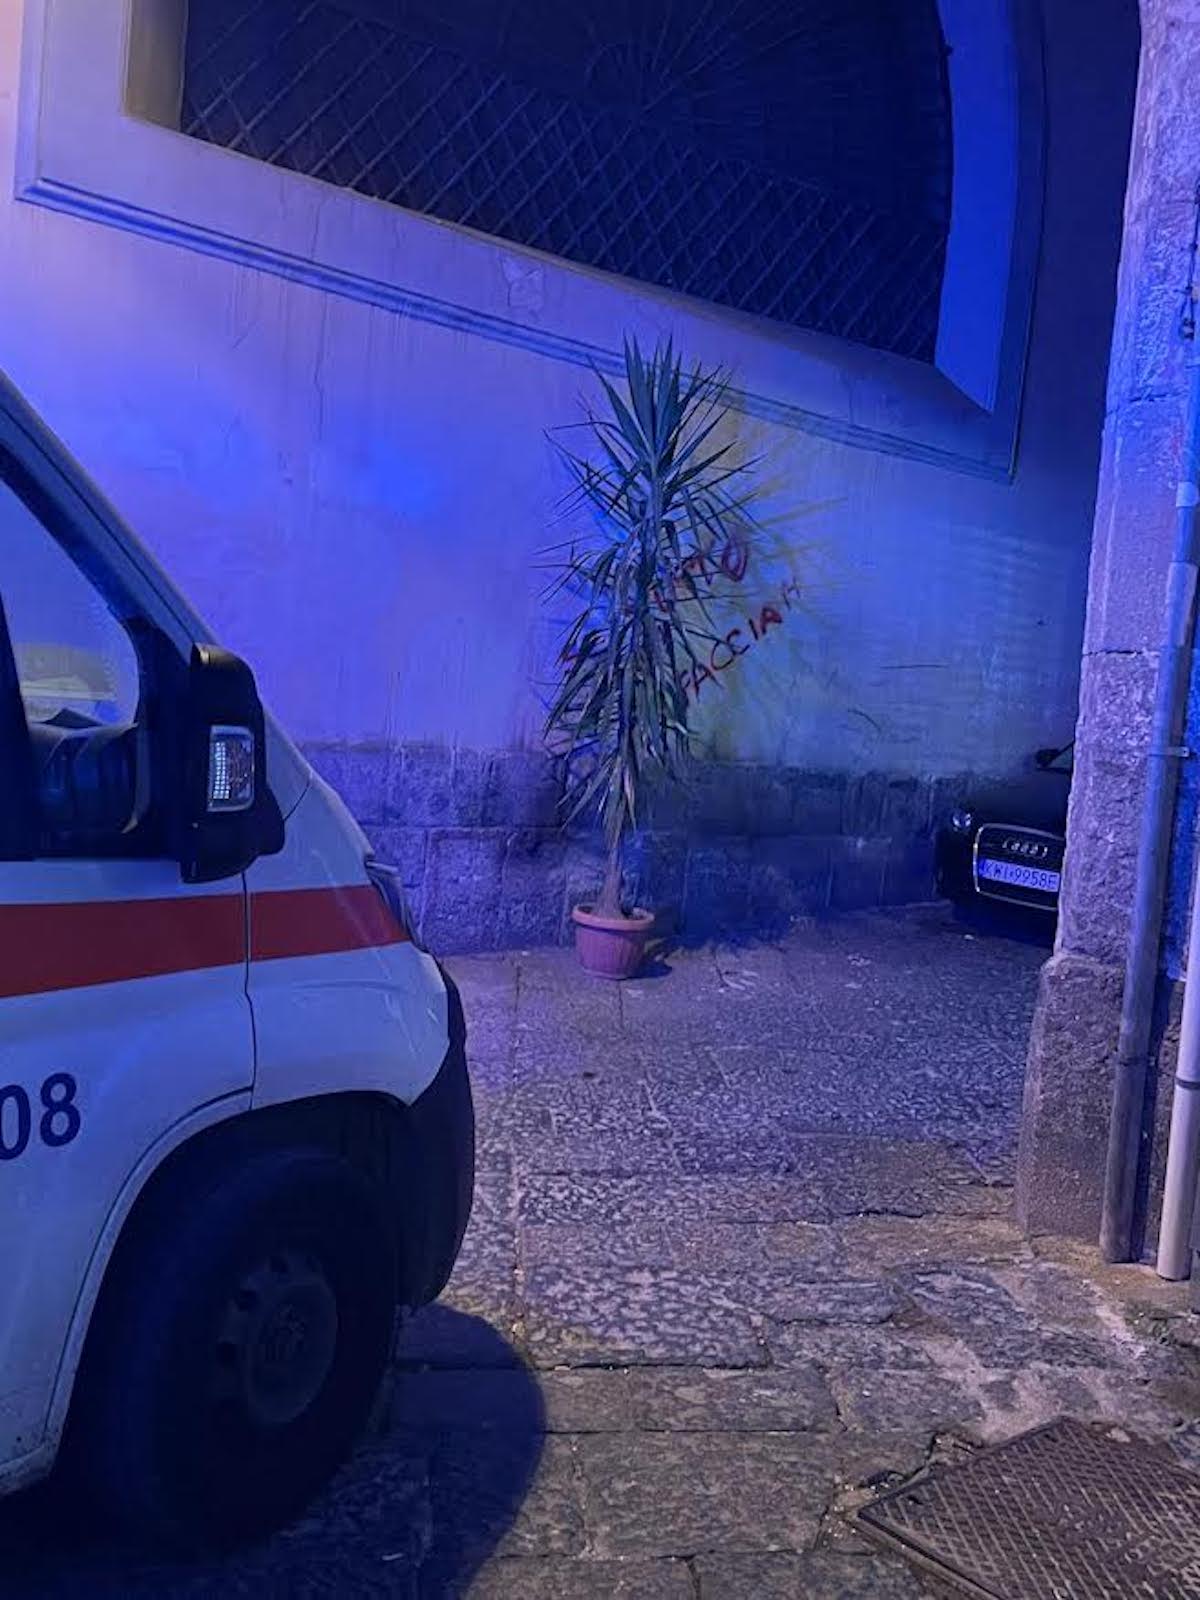 Napoli: ambulanza bloccata da auto in sosta selvaggia nel centro storico